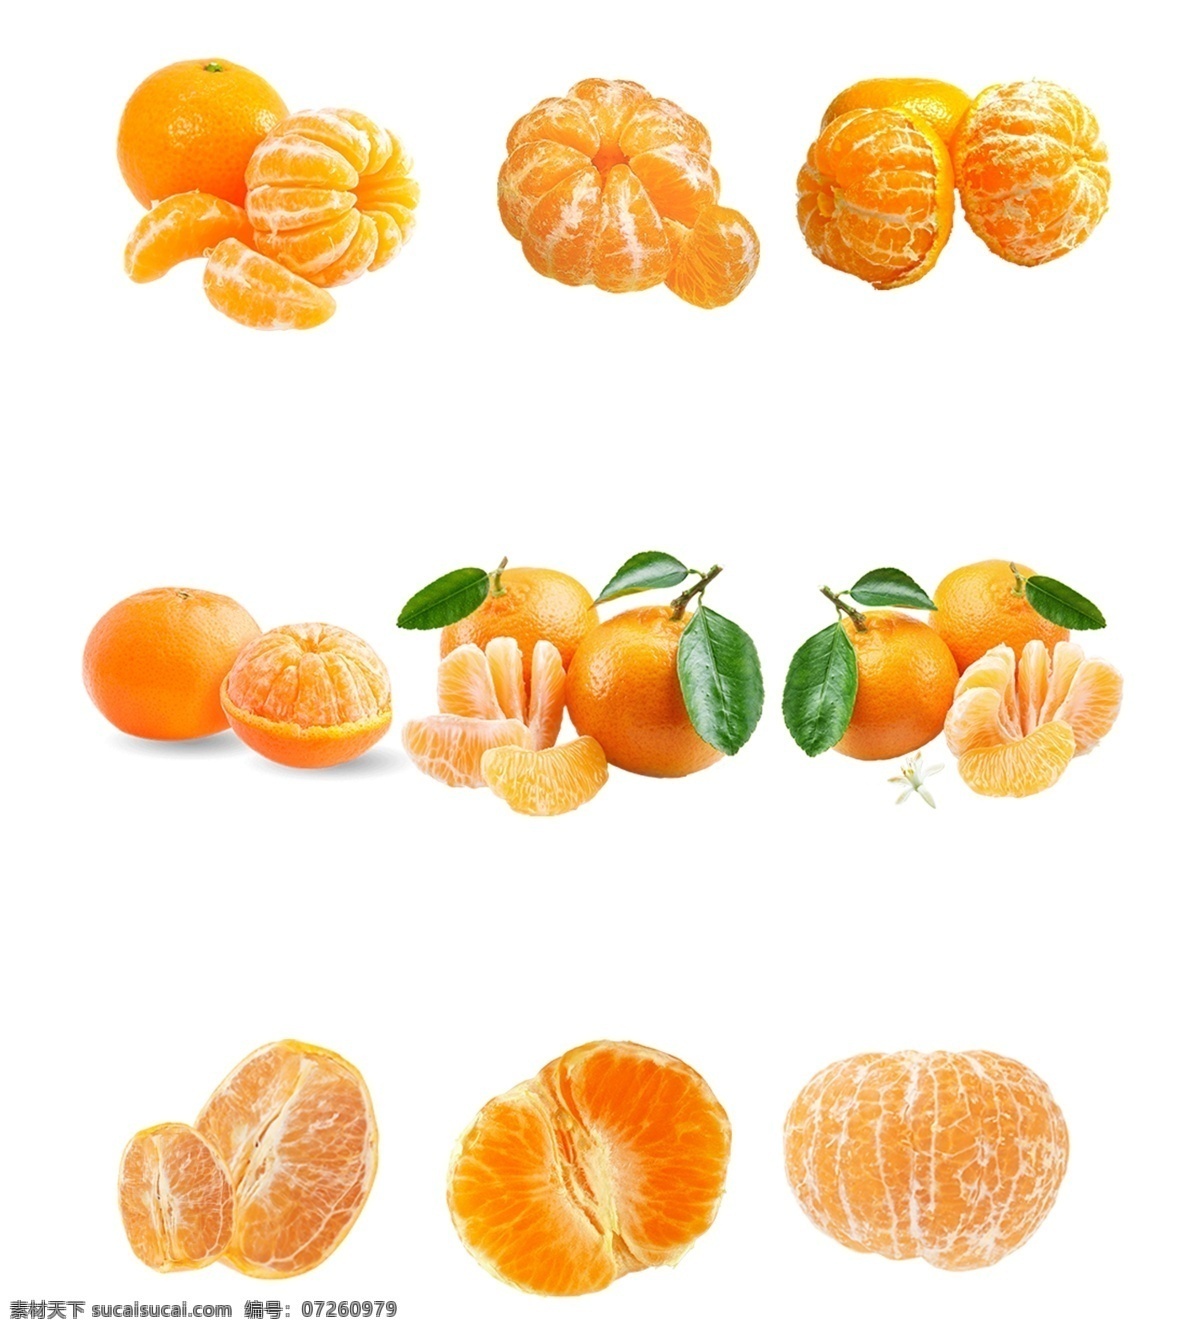 橘子 橙子 柑子 水果 黄色 橘 橙